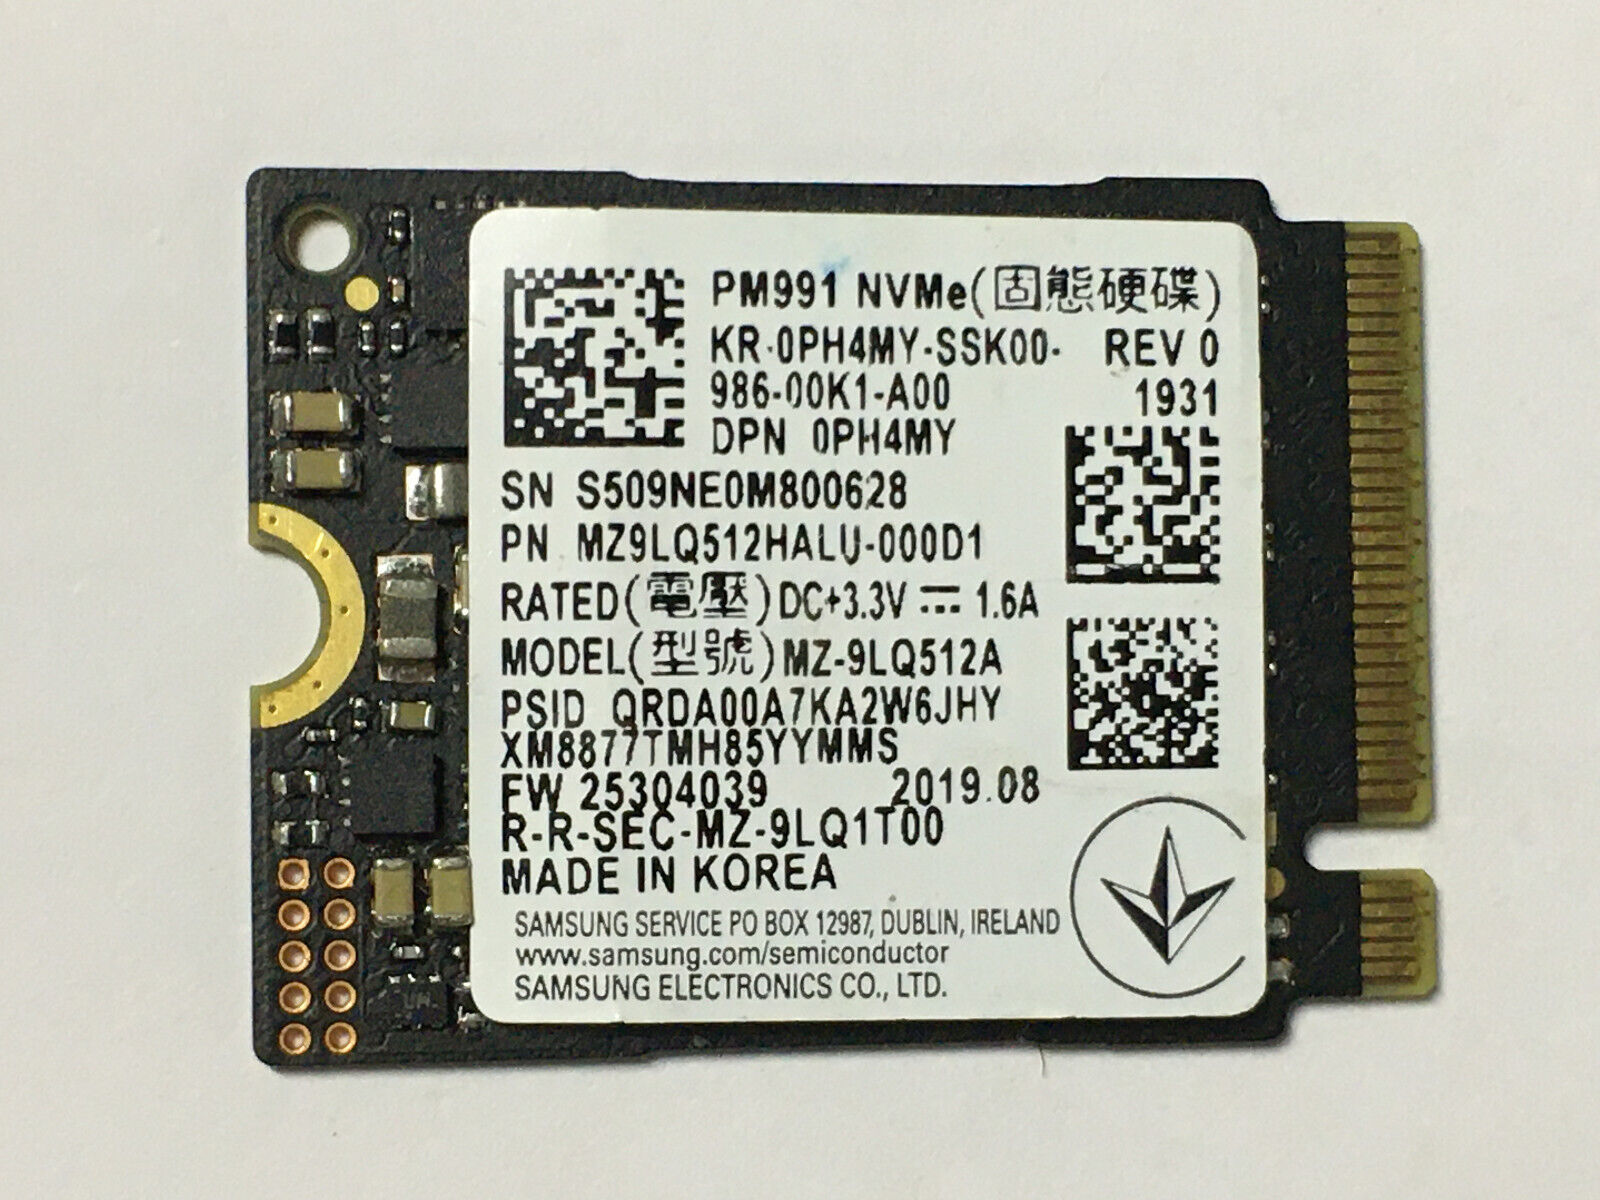 SAMSUNG PM991A PCIe NVMe M.2 2230 MZ-9LQ512A 512GB SSD For Steam Deck HP Laptop